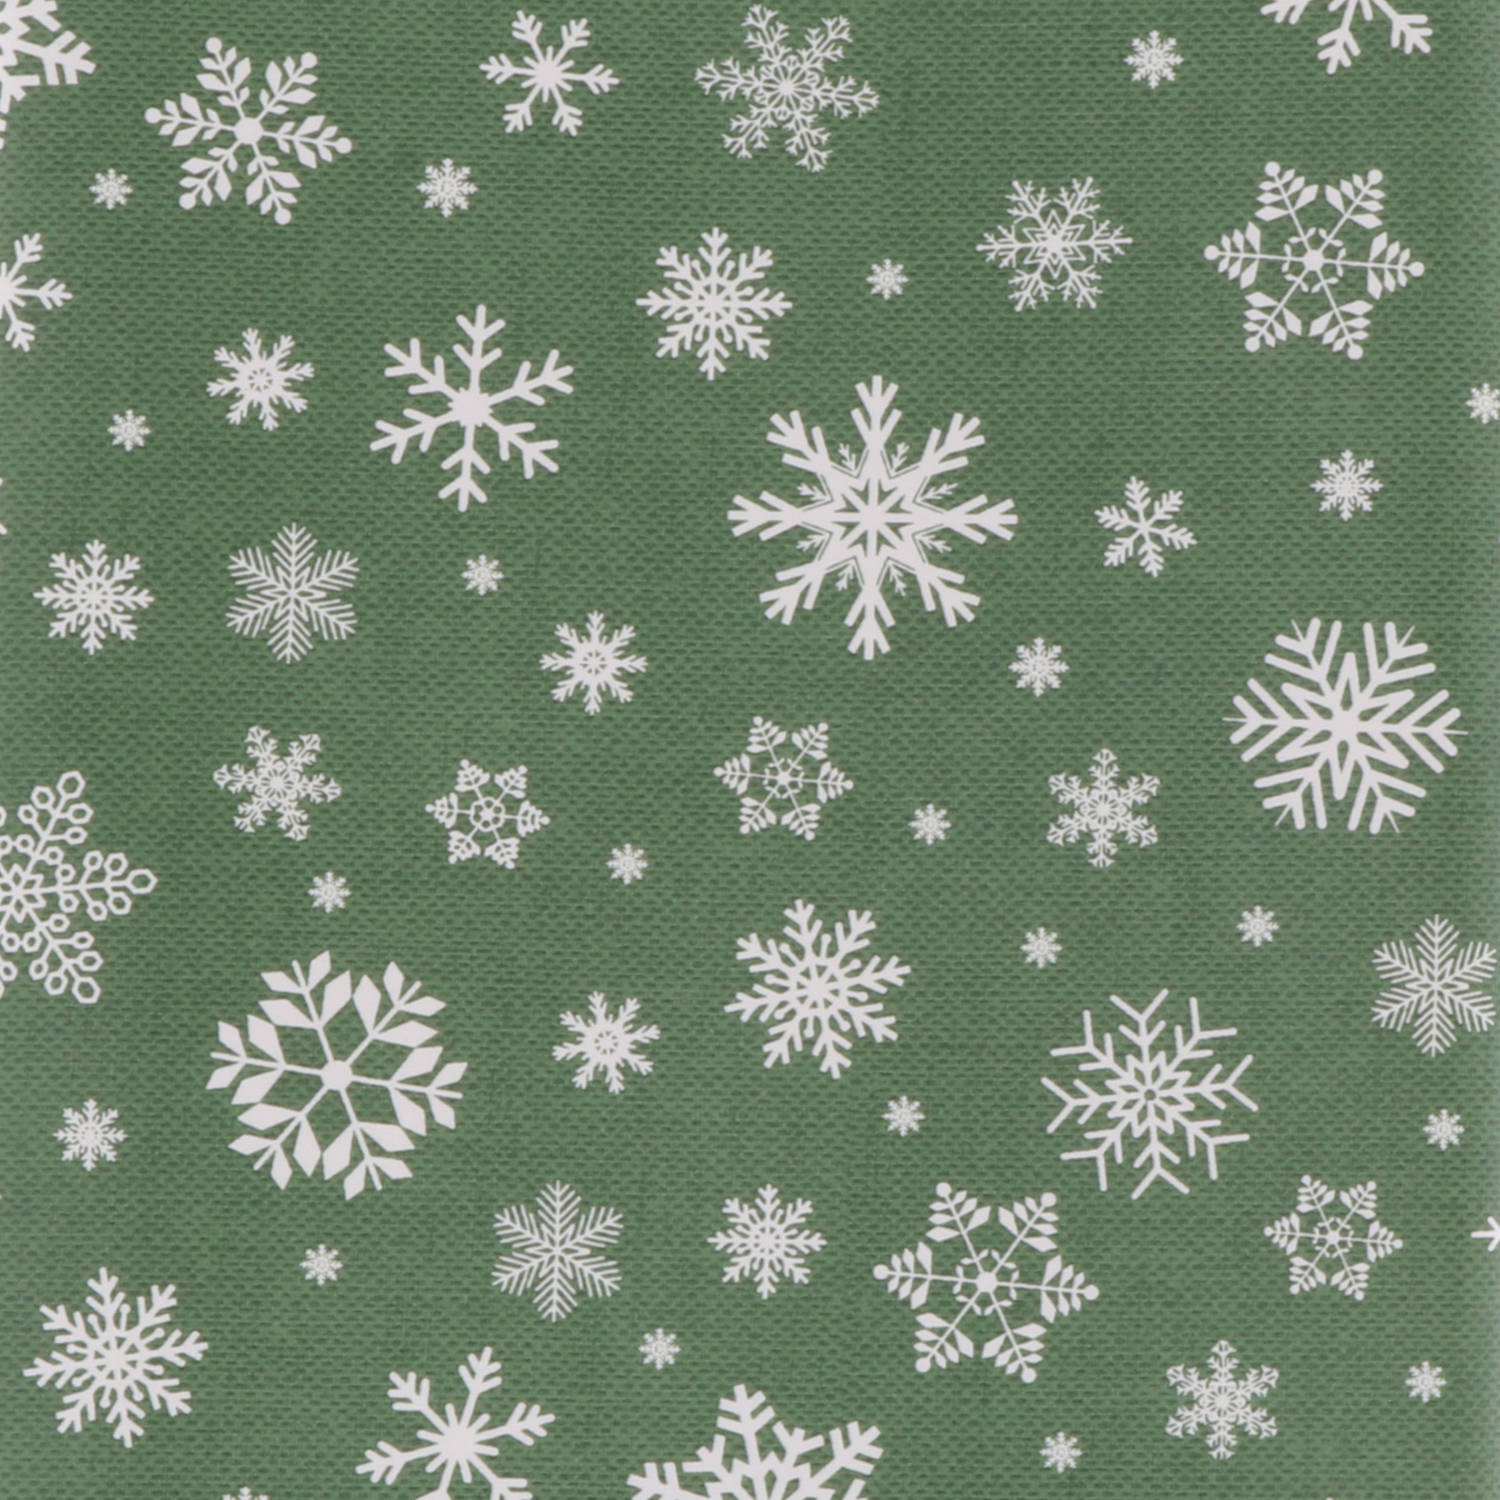 Kerst tafelzeil/tafelkleed groen met witte sneeuwvlokken print 140 x cm - Tafellakens | Blokker